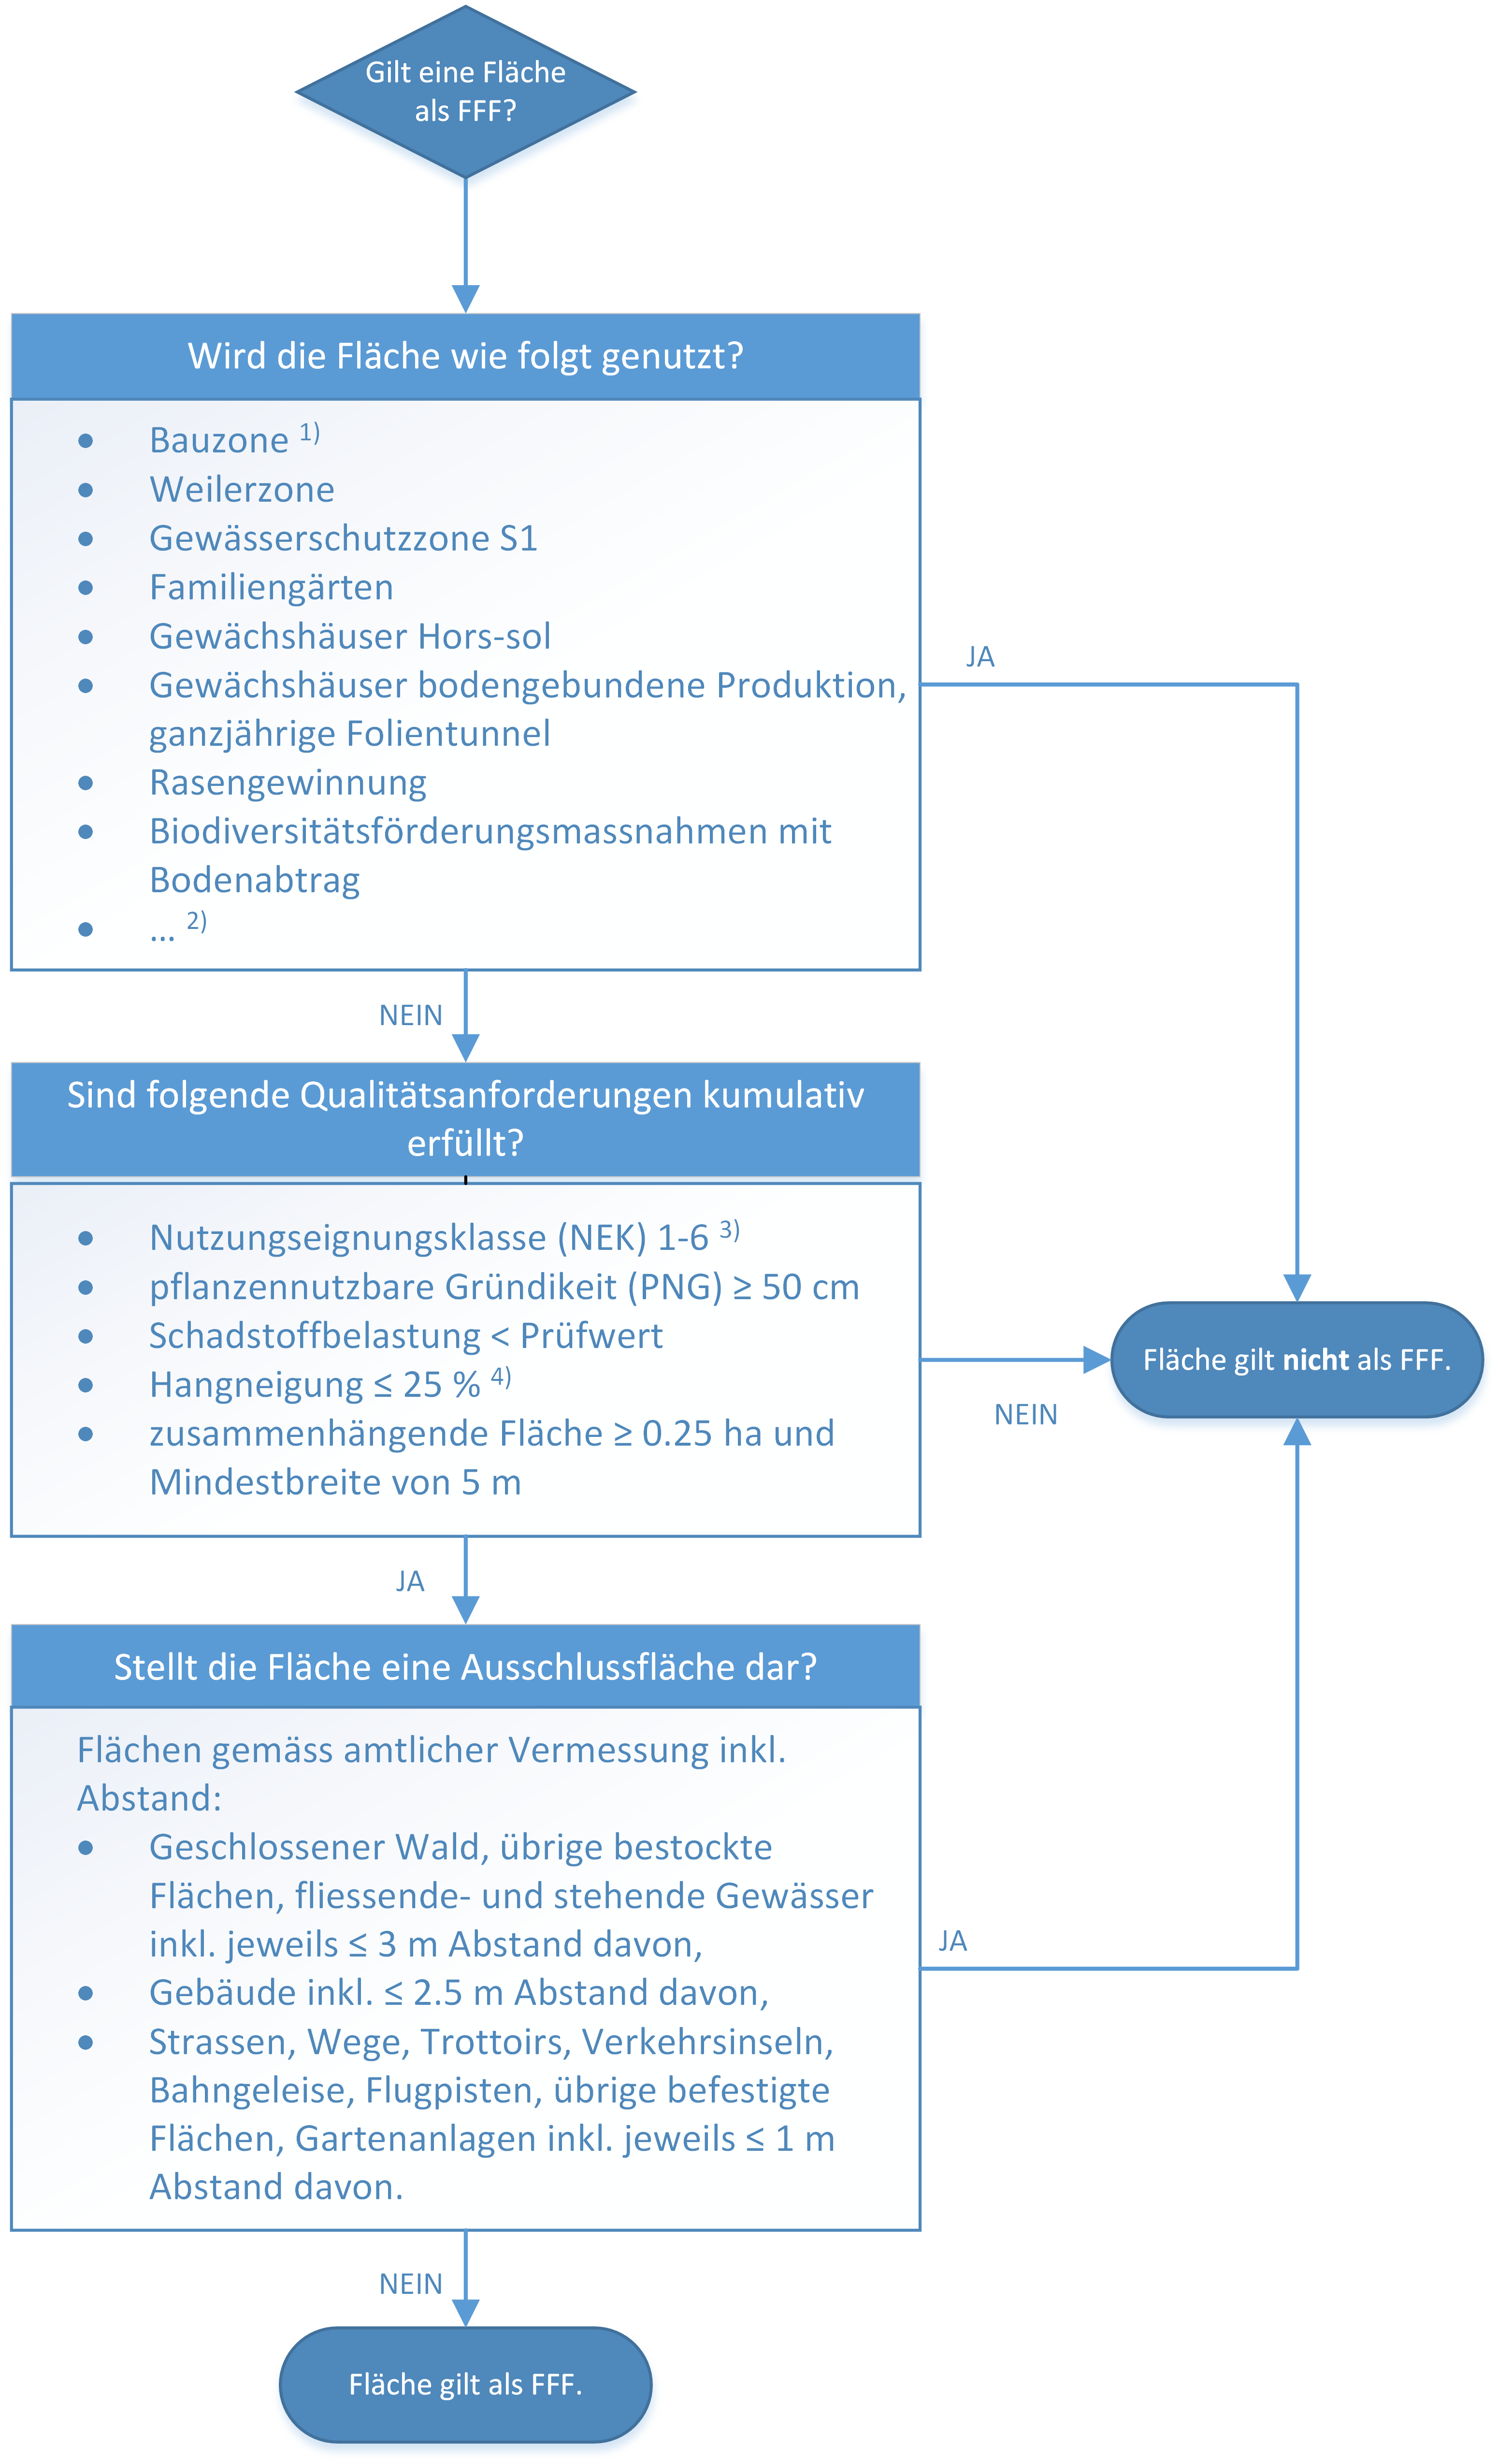 Die Grafik zeigt ein Ablaufschema für die Prüfung eines Projekts auf FFF-Relevanz.